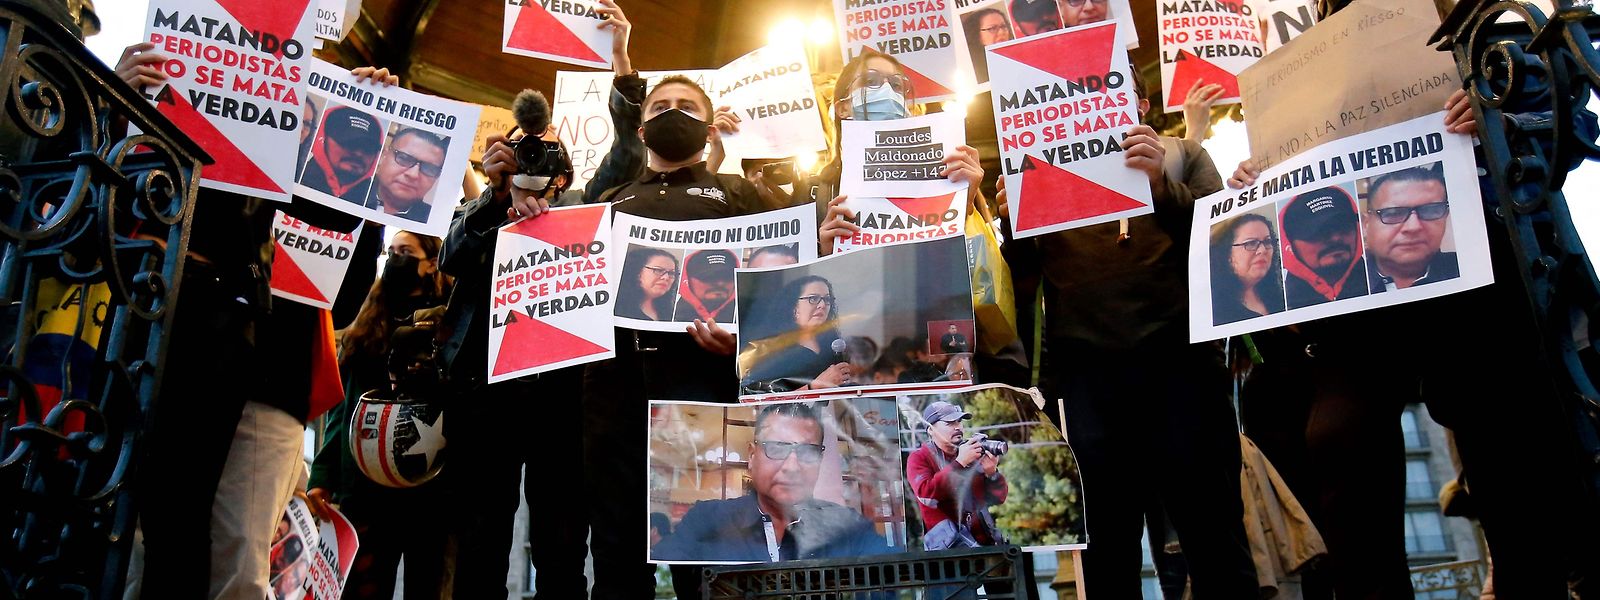 Eine Gruppe von Medienschaffenden hält während einer Demo Plakate mit der Aufschrift "Wer Journalisten tötet, tötet nicht die Wahrheit" hoch.